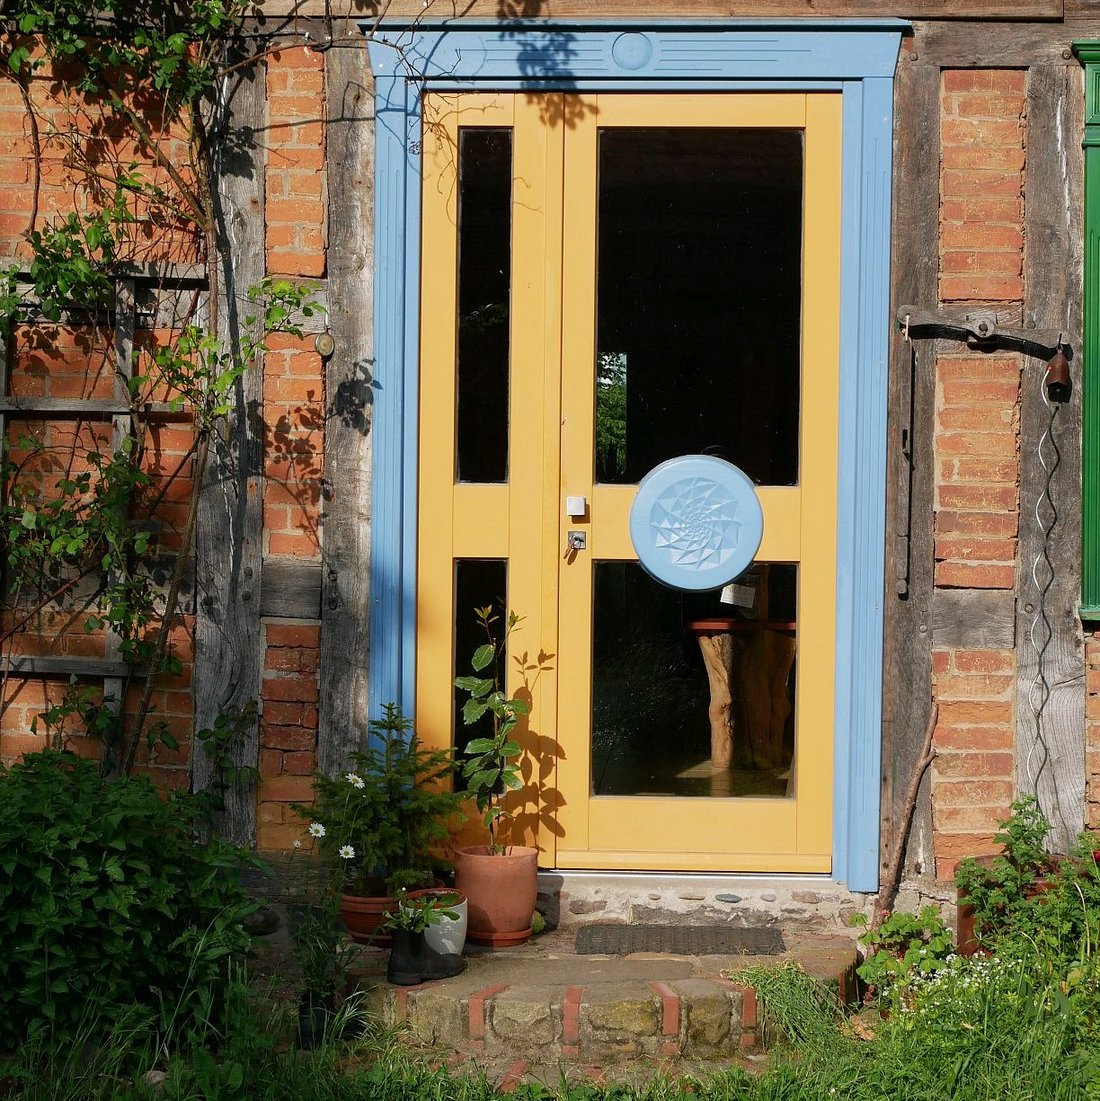 Eine einladende zweiflügelige Haustür in den Farben Hellblau und Gelborgange mit einem geschnitzen Ornament, ähnlichen einem Mandala) auf einem Türflügel. Die Türfüllungen sind aus Glas.